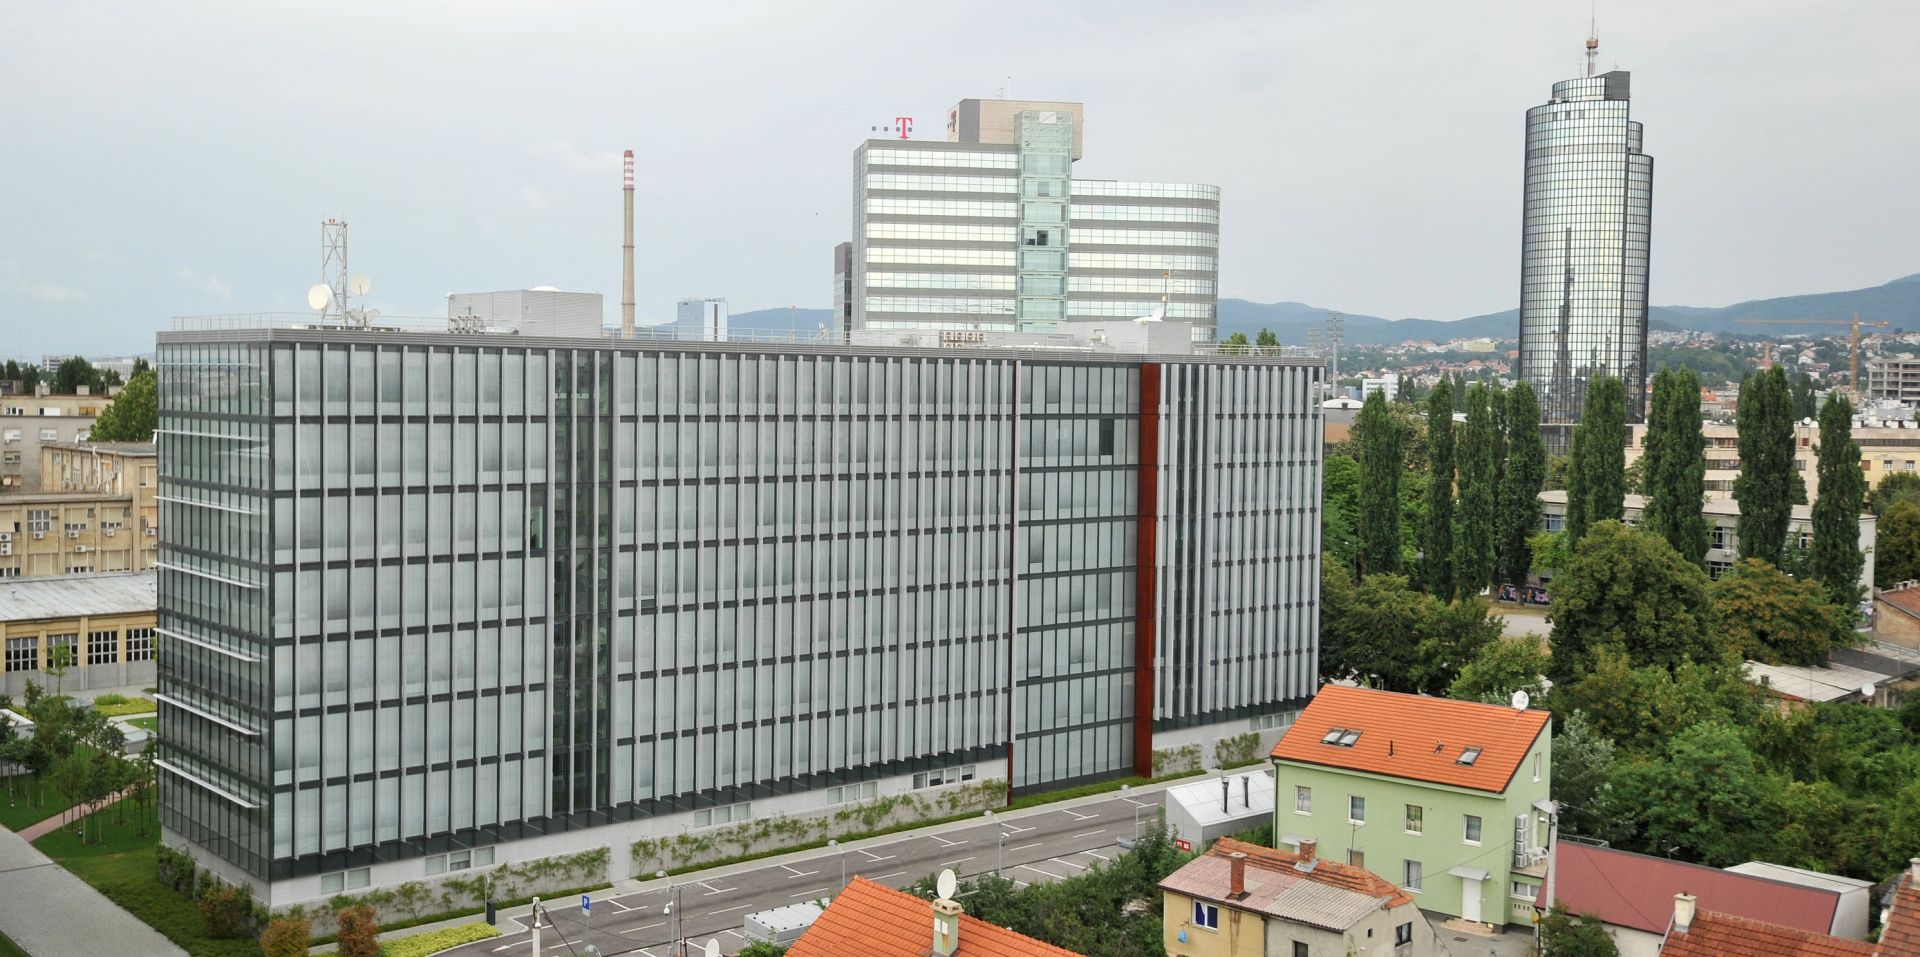 22.07.2012., Zagrsb - U Savskoj 39 nova zgrada SOA-e, sigurnosno obavjestajne agencije.
Photo: Marko Lukunic/PIXSELL